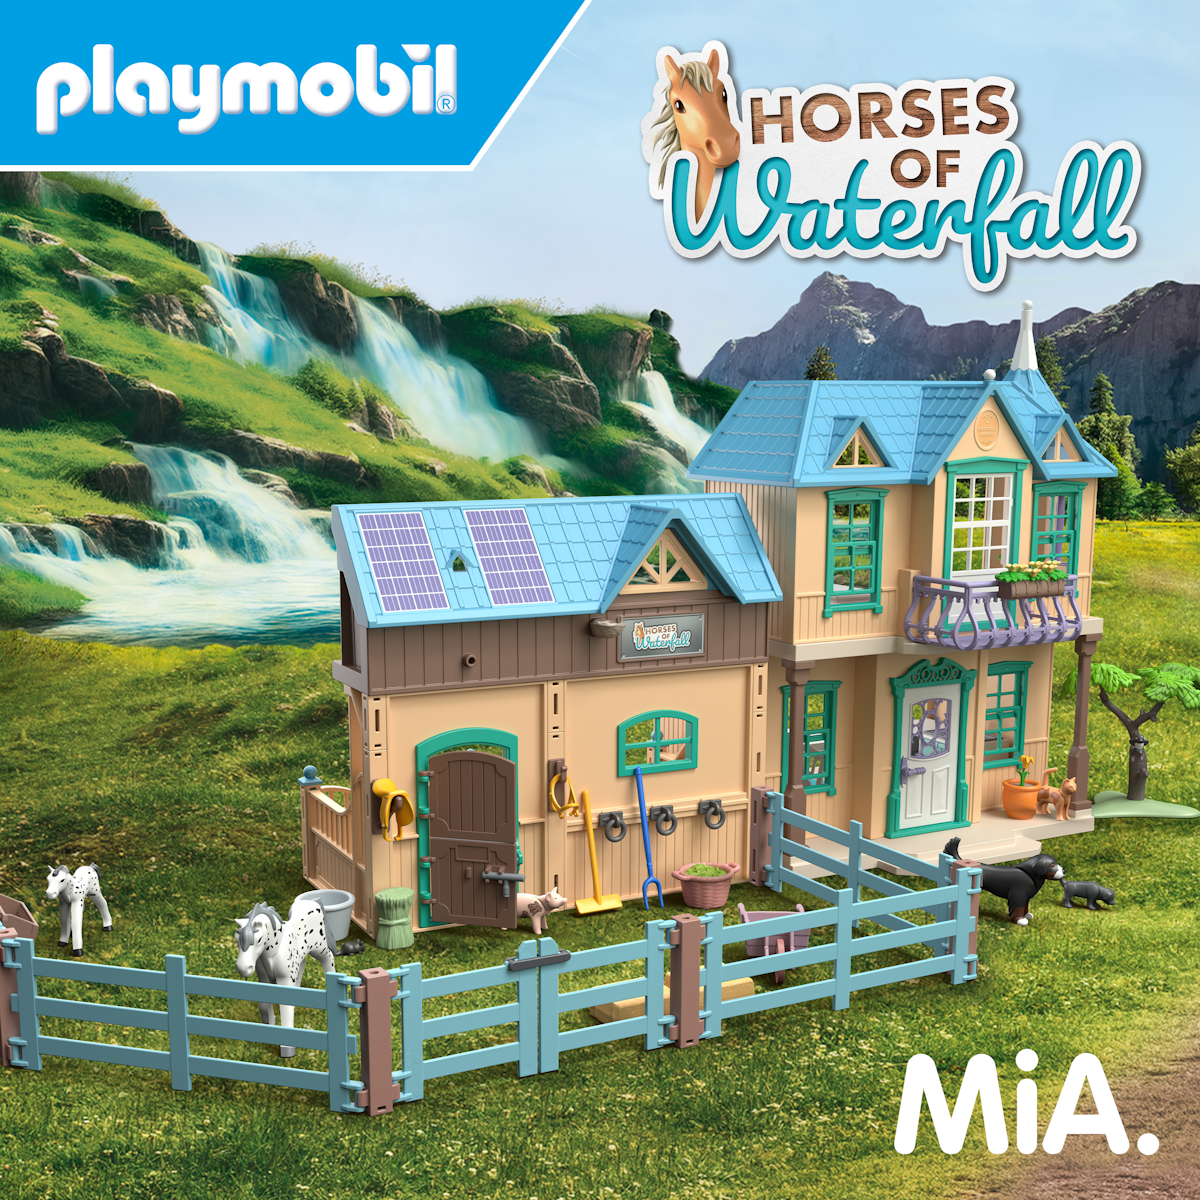 Die neue Spielwelt „Horses of Waterfall“ mit eigenem Titelsong der Berliner Band MiA.